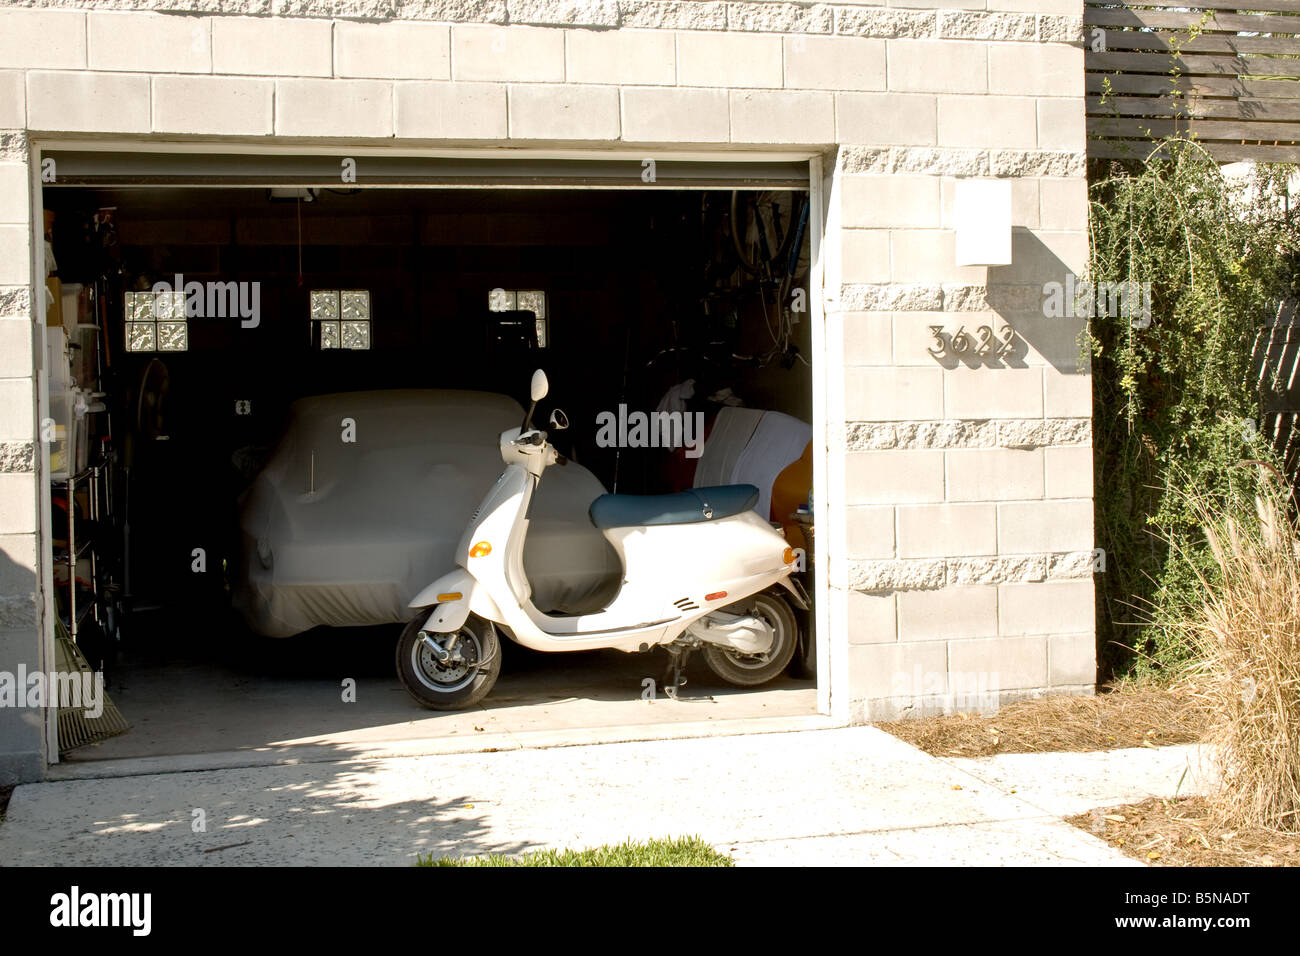 Photo de scooter devant une voiture recouverte d'une bâche de toile dans un garage Banque D'Images